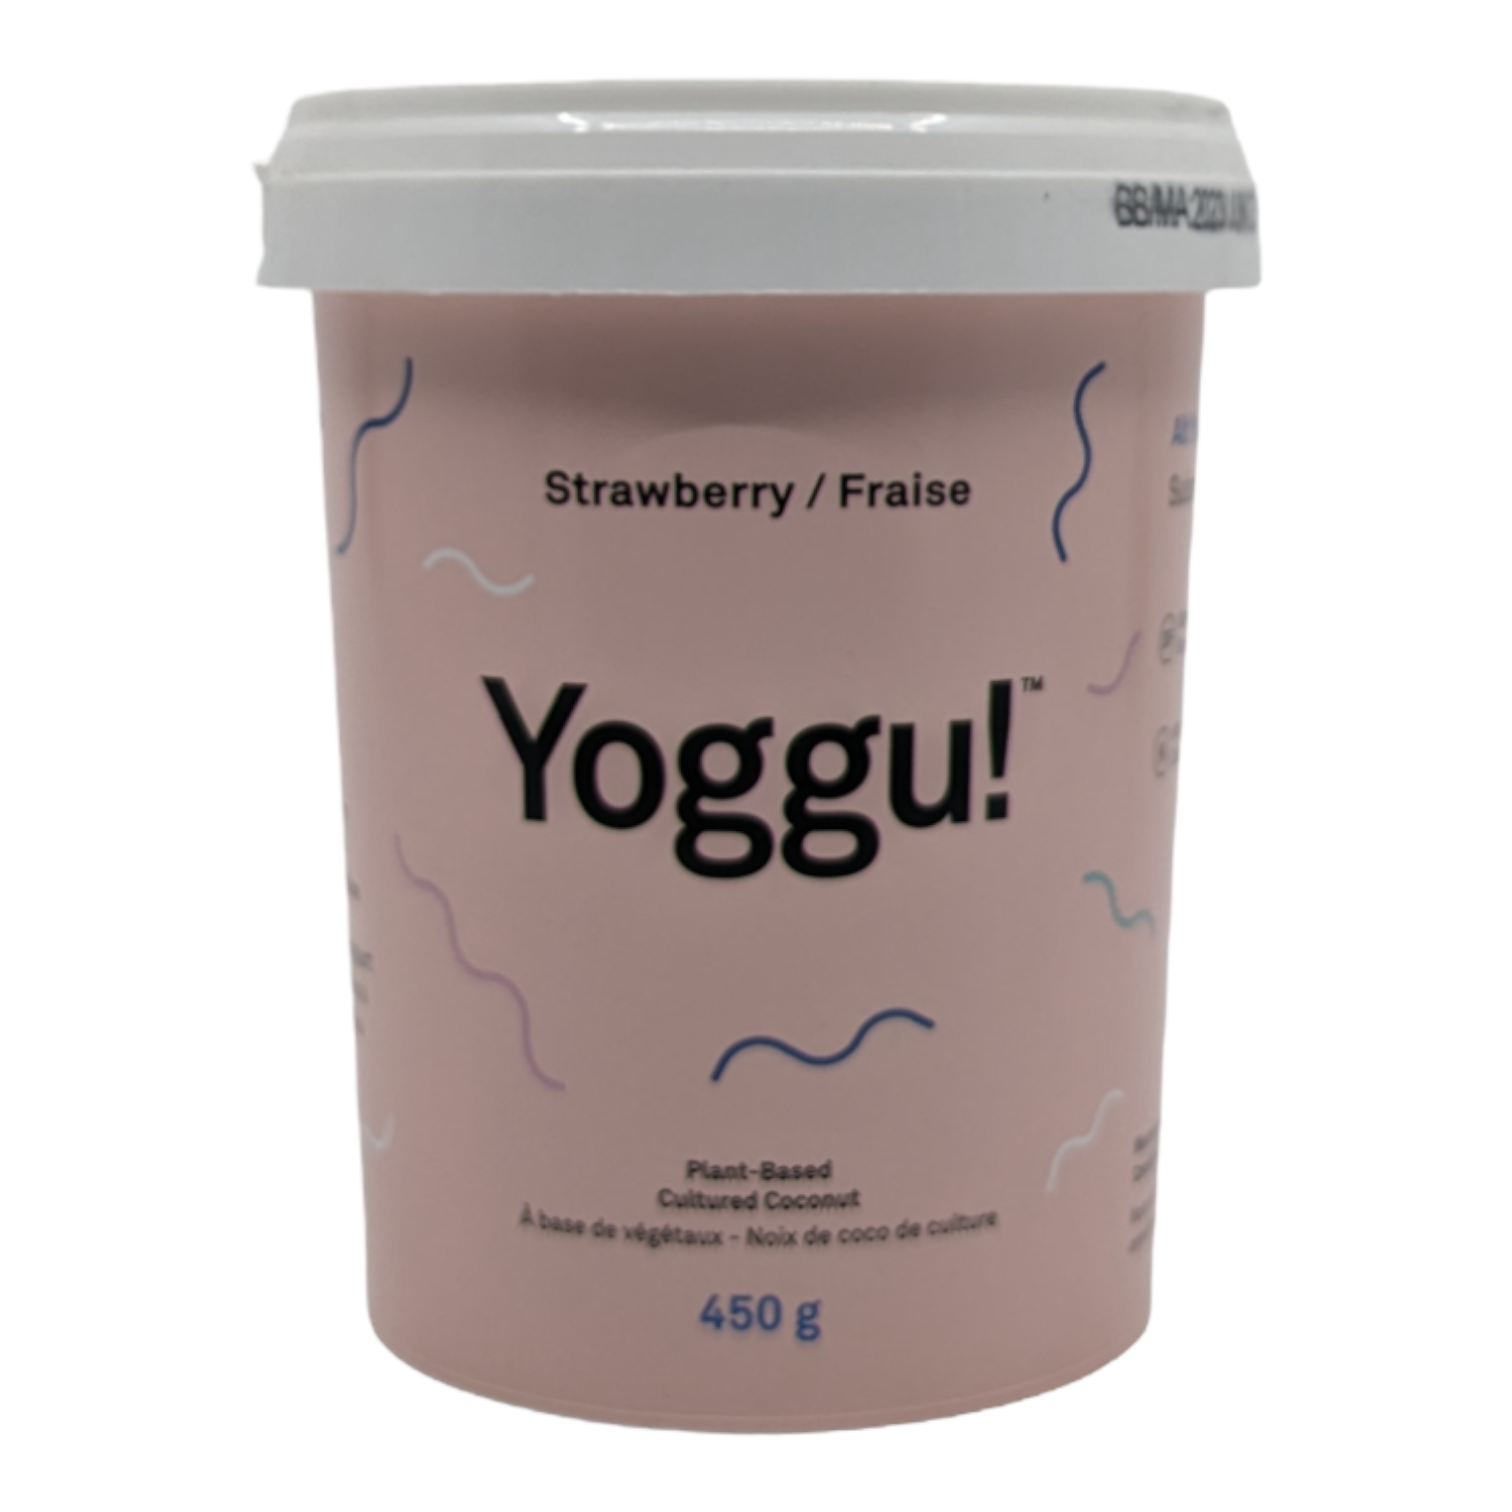 Yoggu!- yogourt saveur fraise à base de végétaux et noix de coco de culture